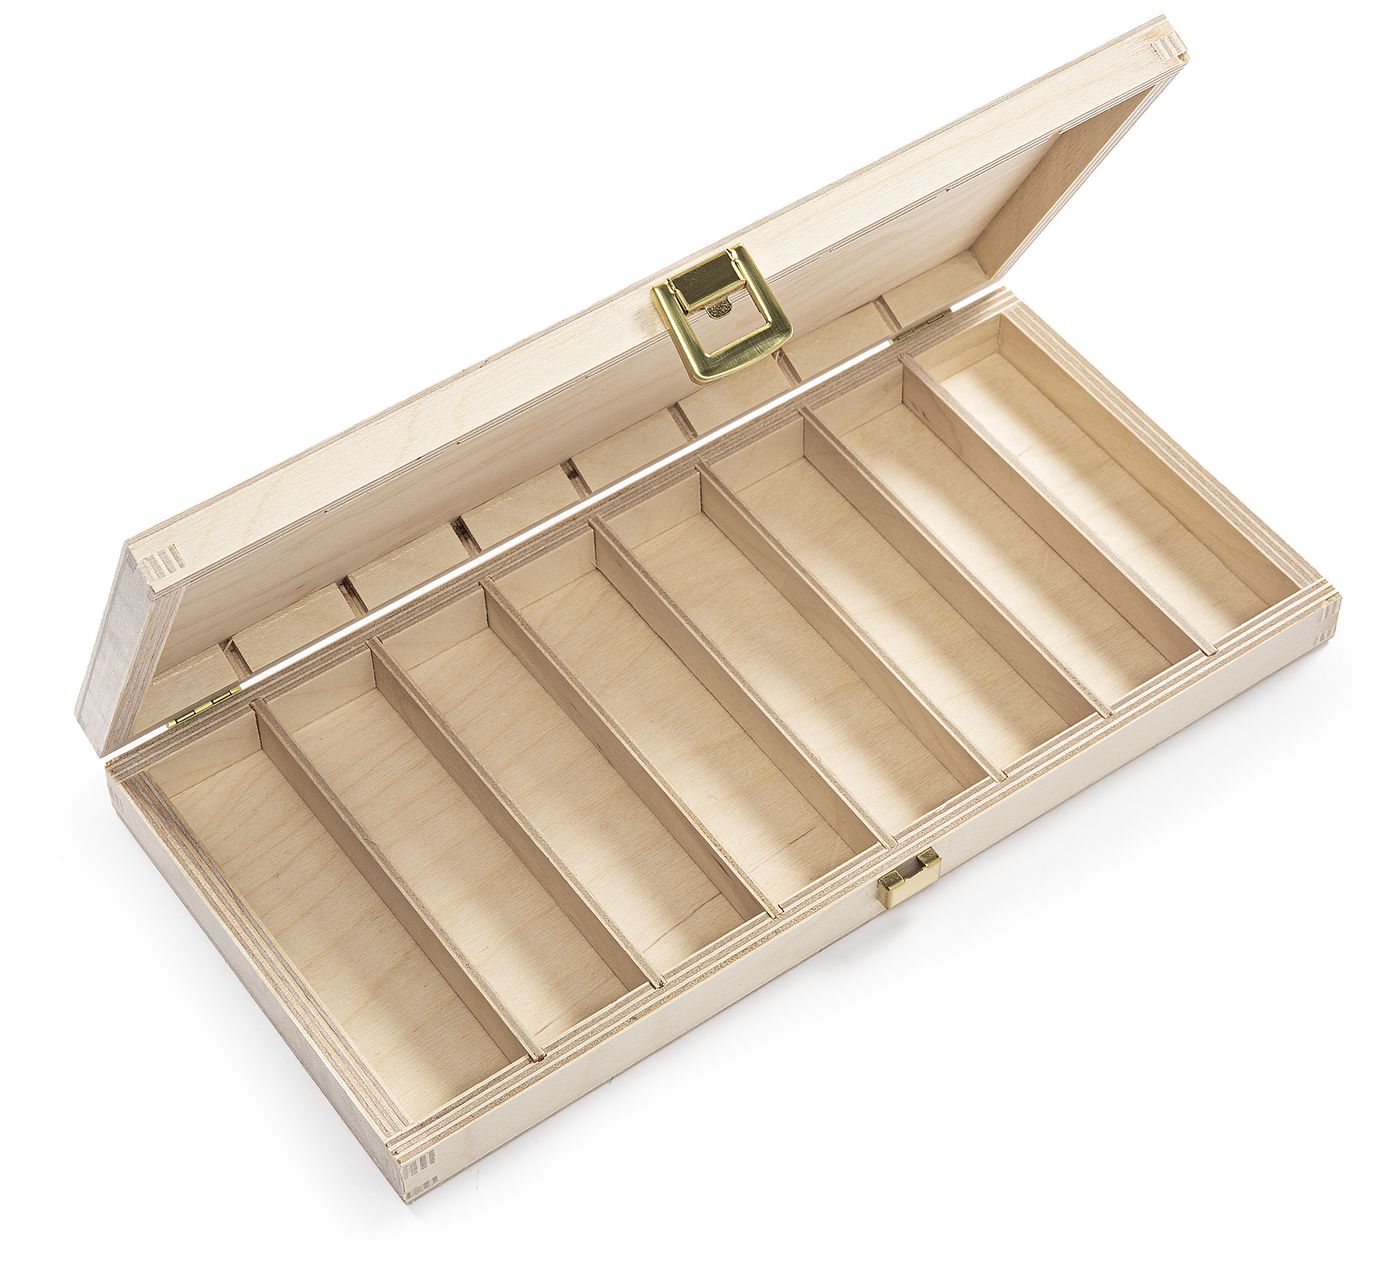 Holzkiste
Wooden box
Caisse en bois
Houten kist
Caja de madera
C